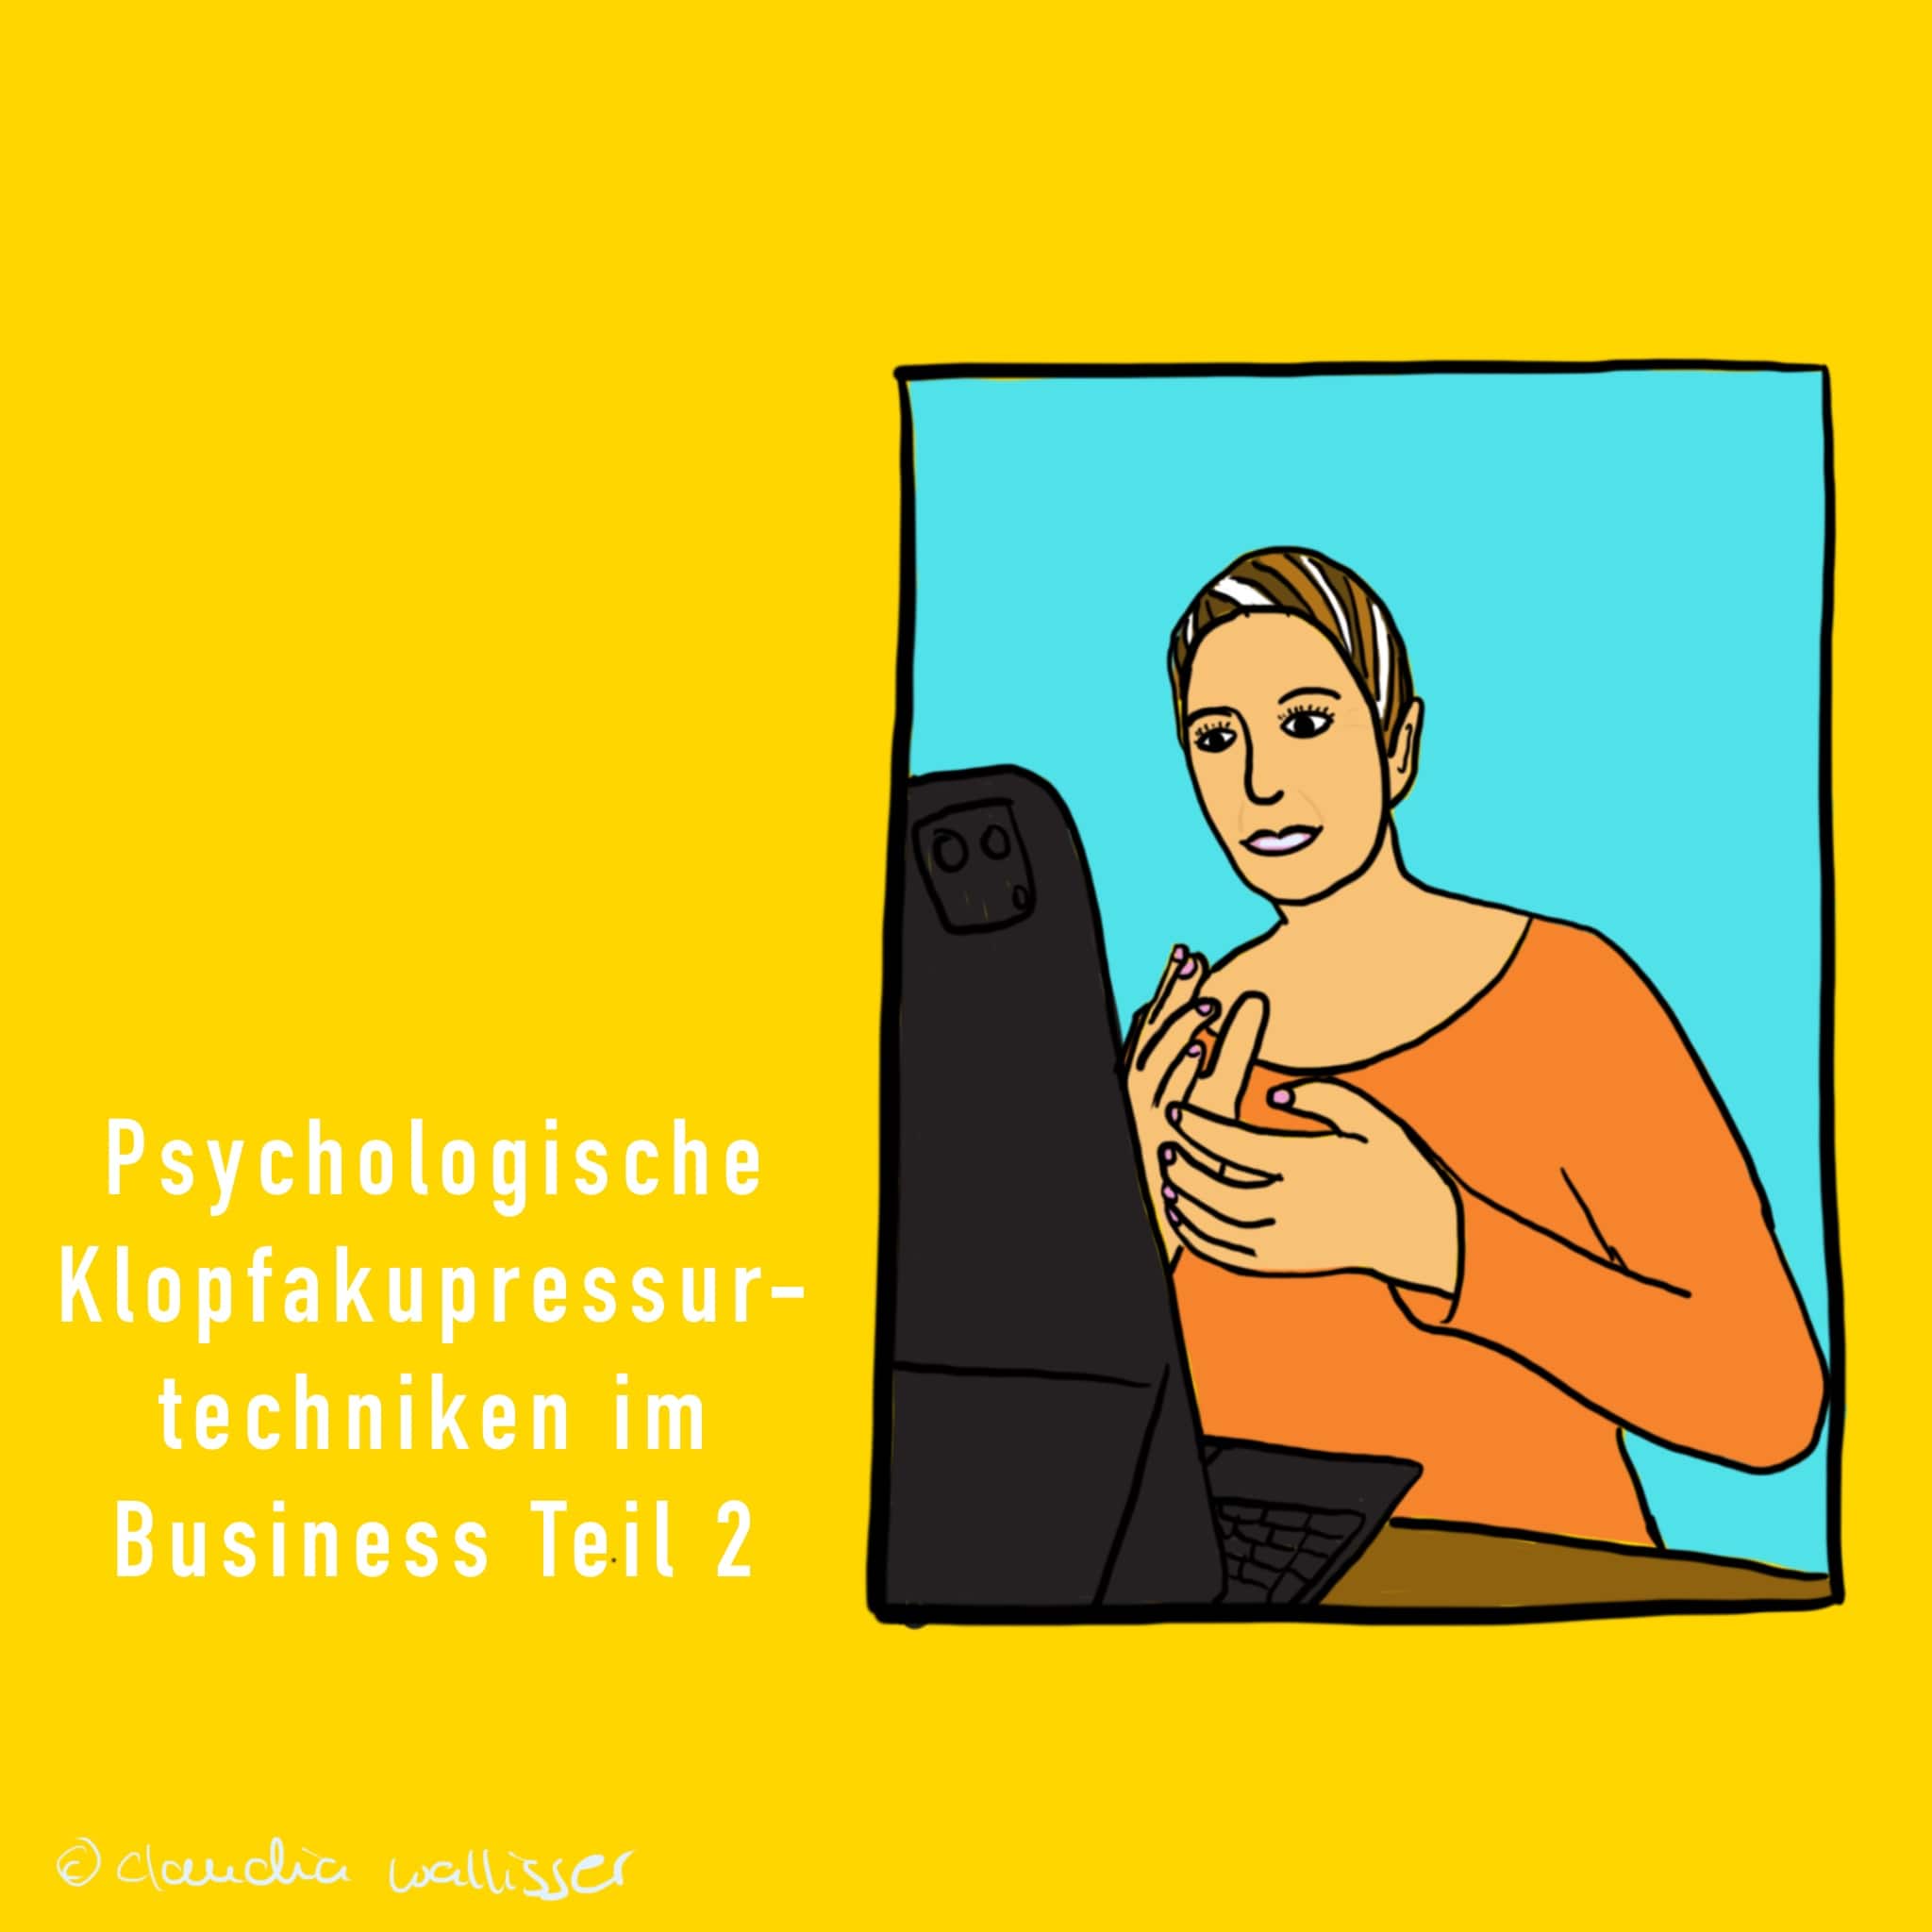 Psychologische Klopfakupressurtechnik in der Anwendung bei Problemen im Business – Teil 2